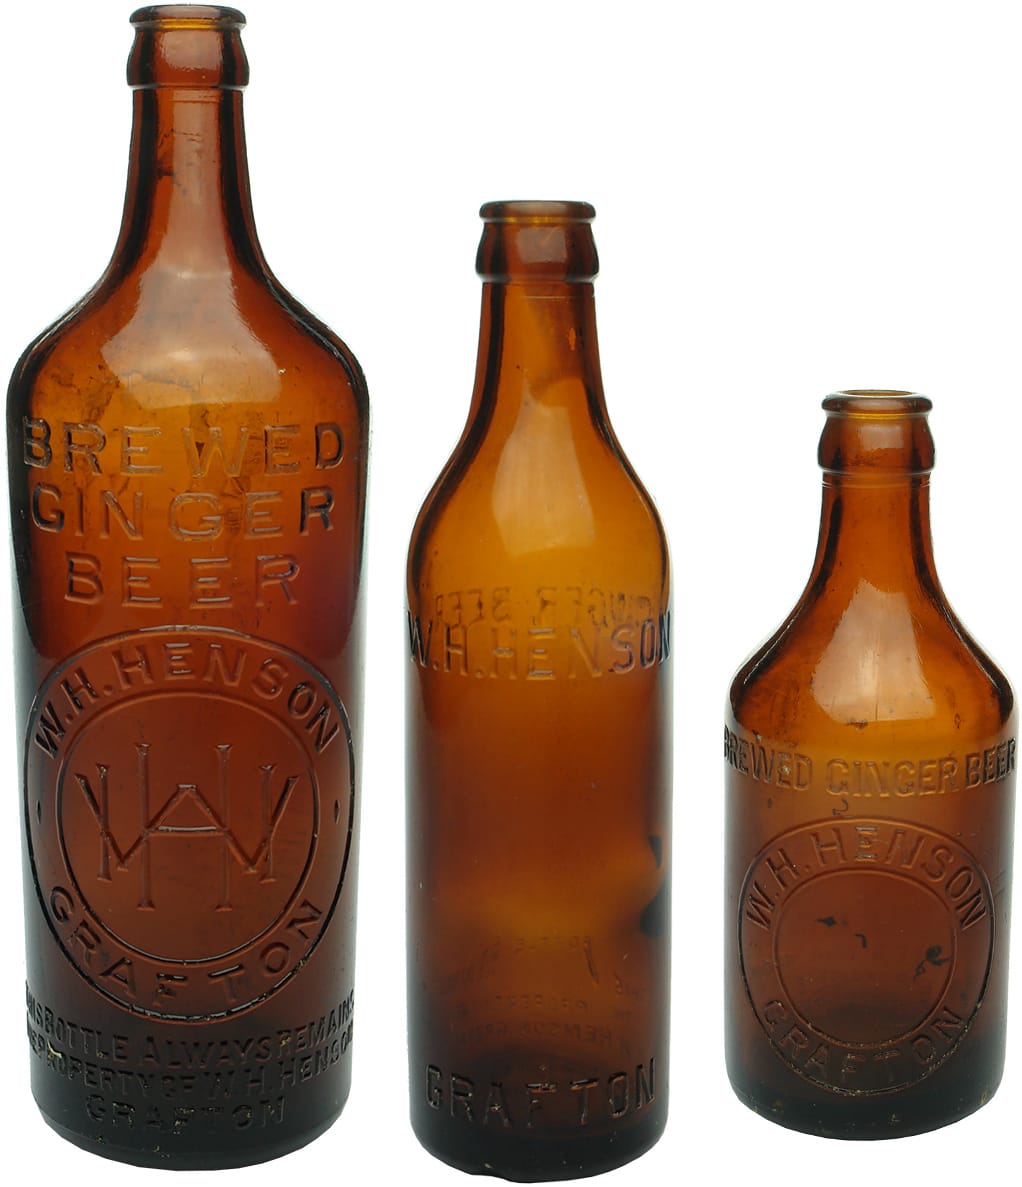 Old Antique Ginger Beer Bottles